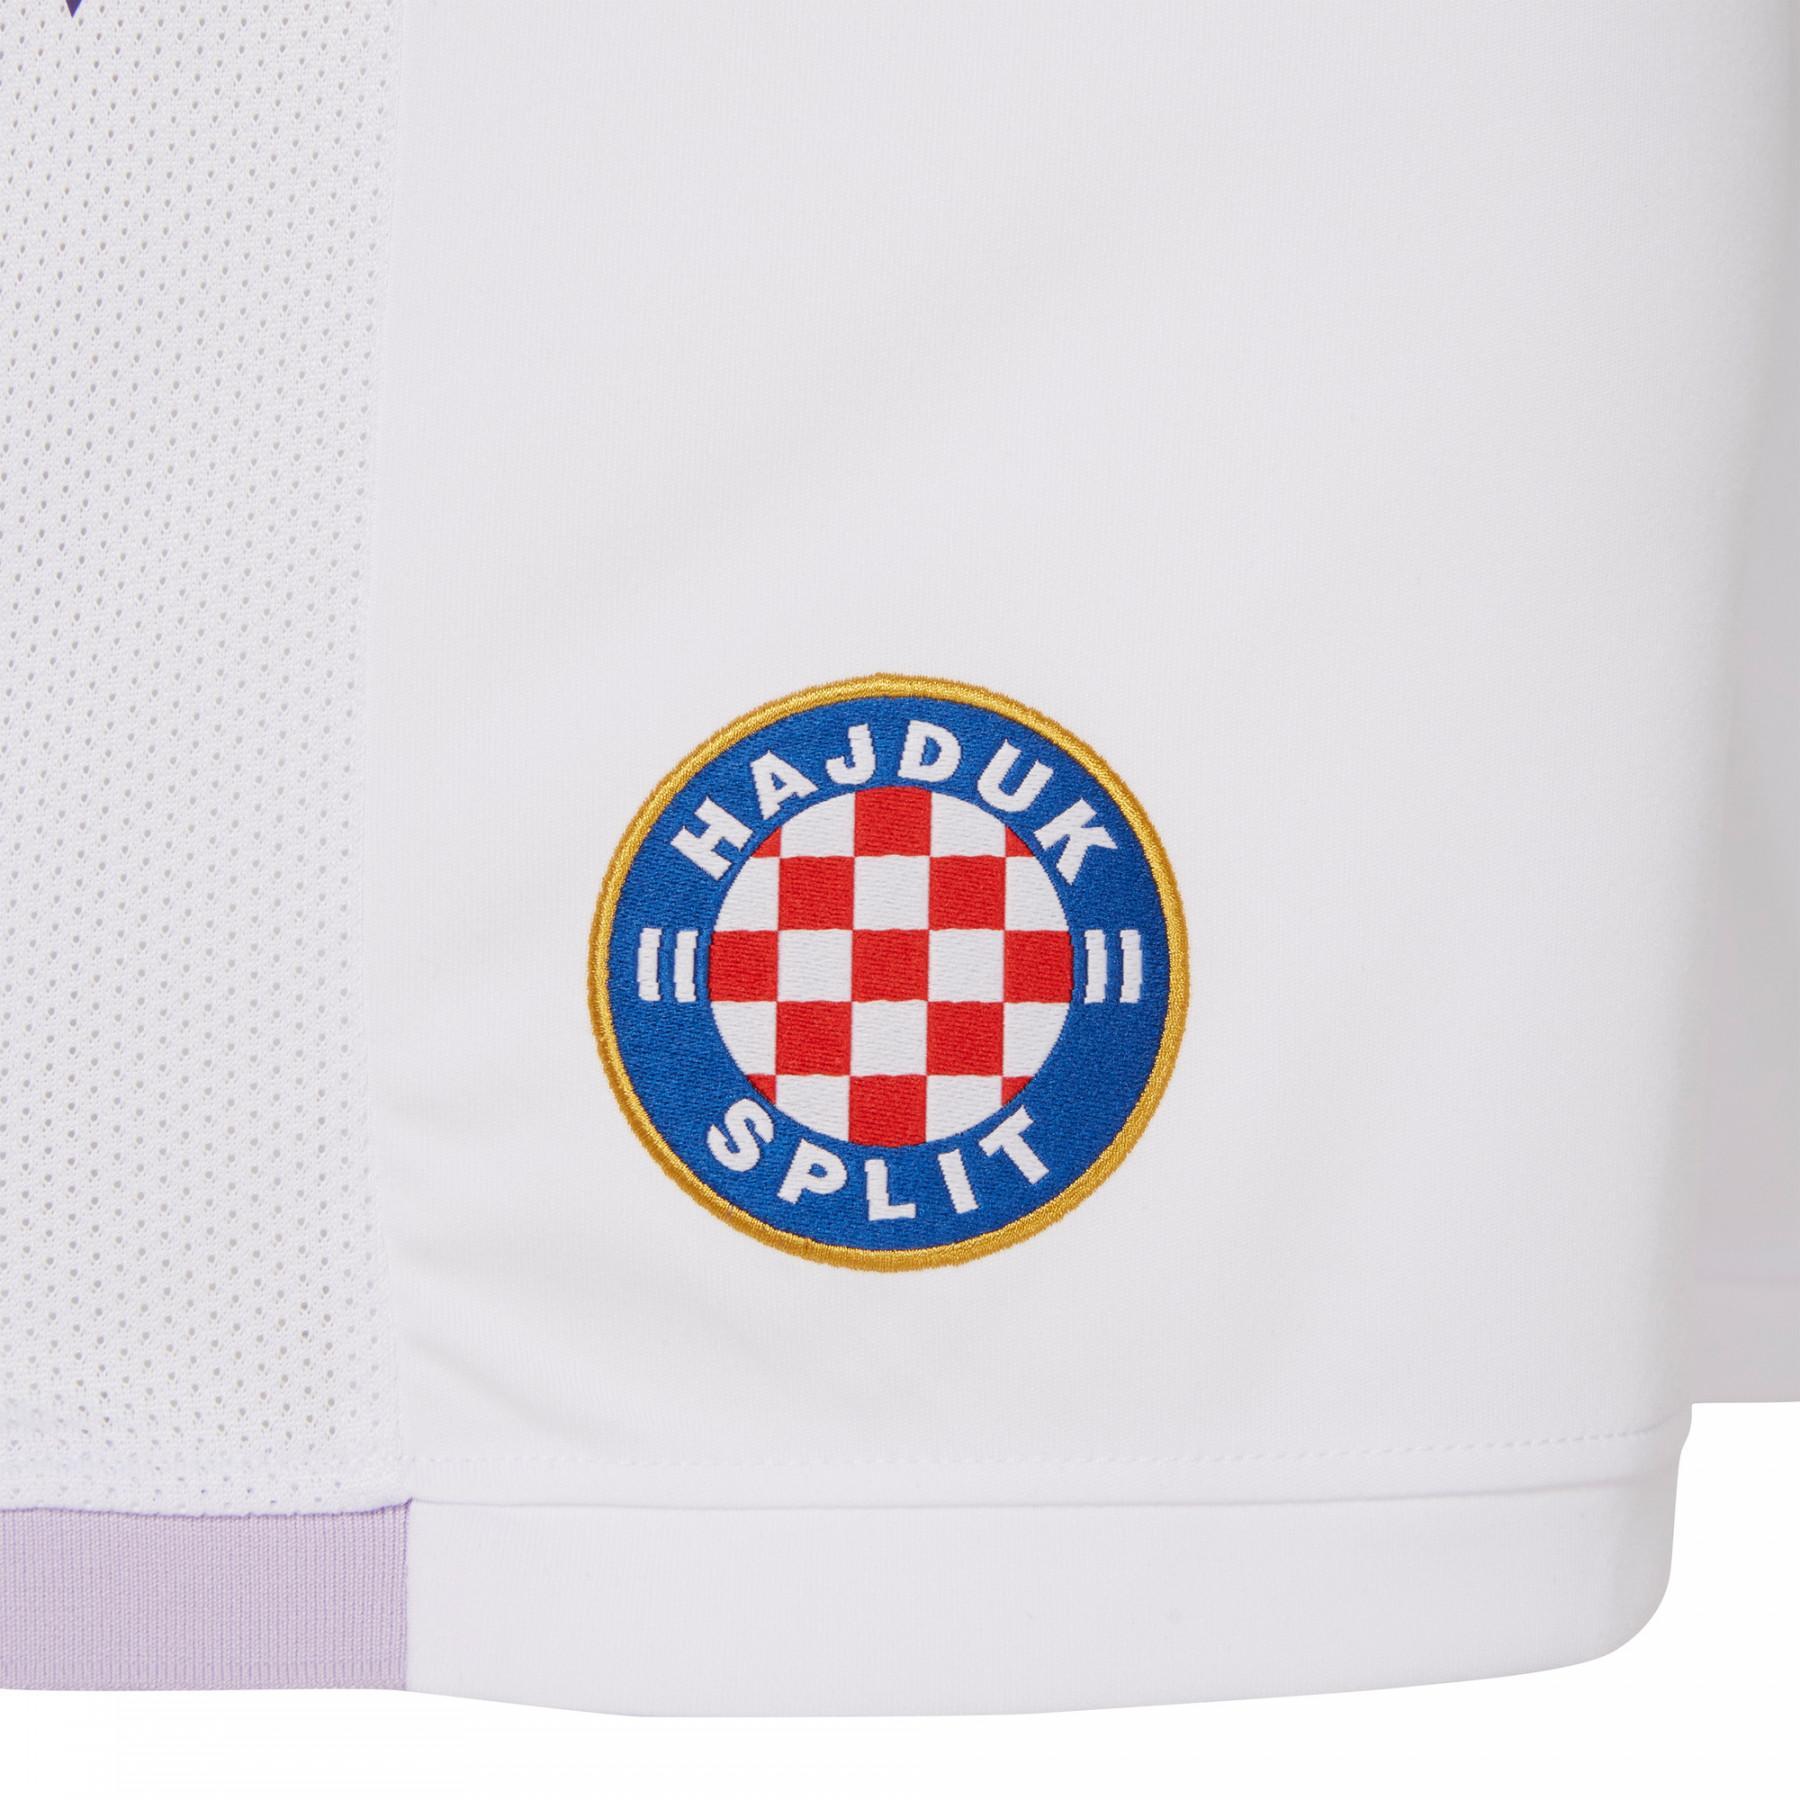 Tercero corto hnk Hajduk Split 19/20